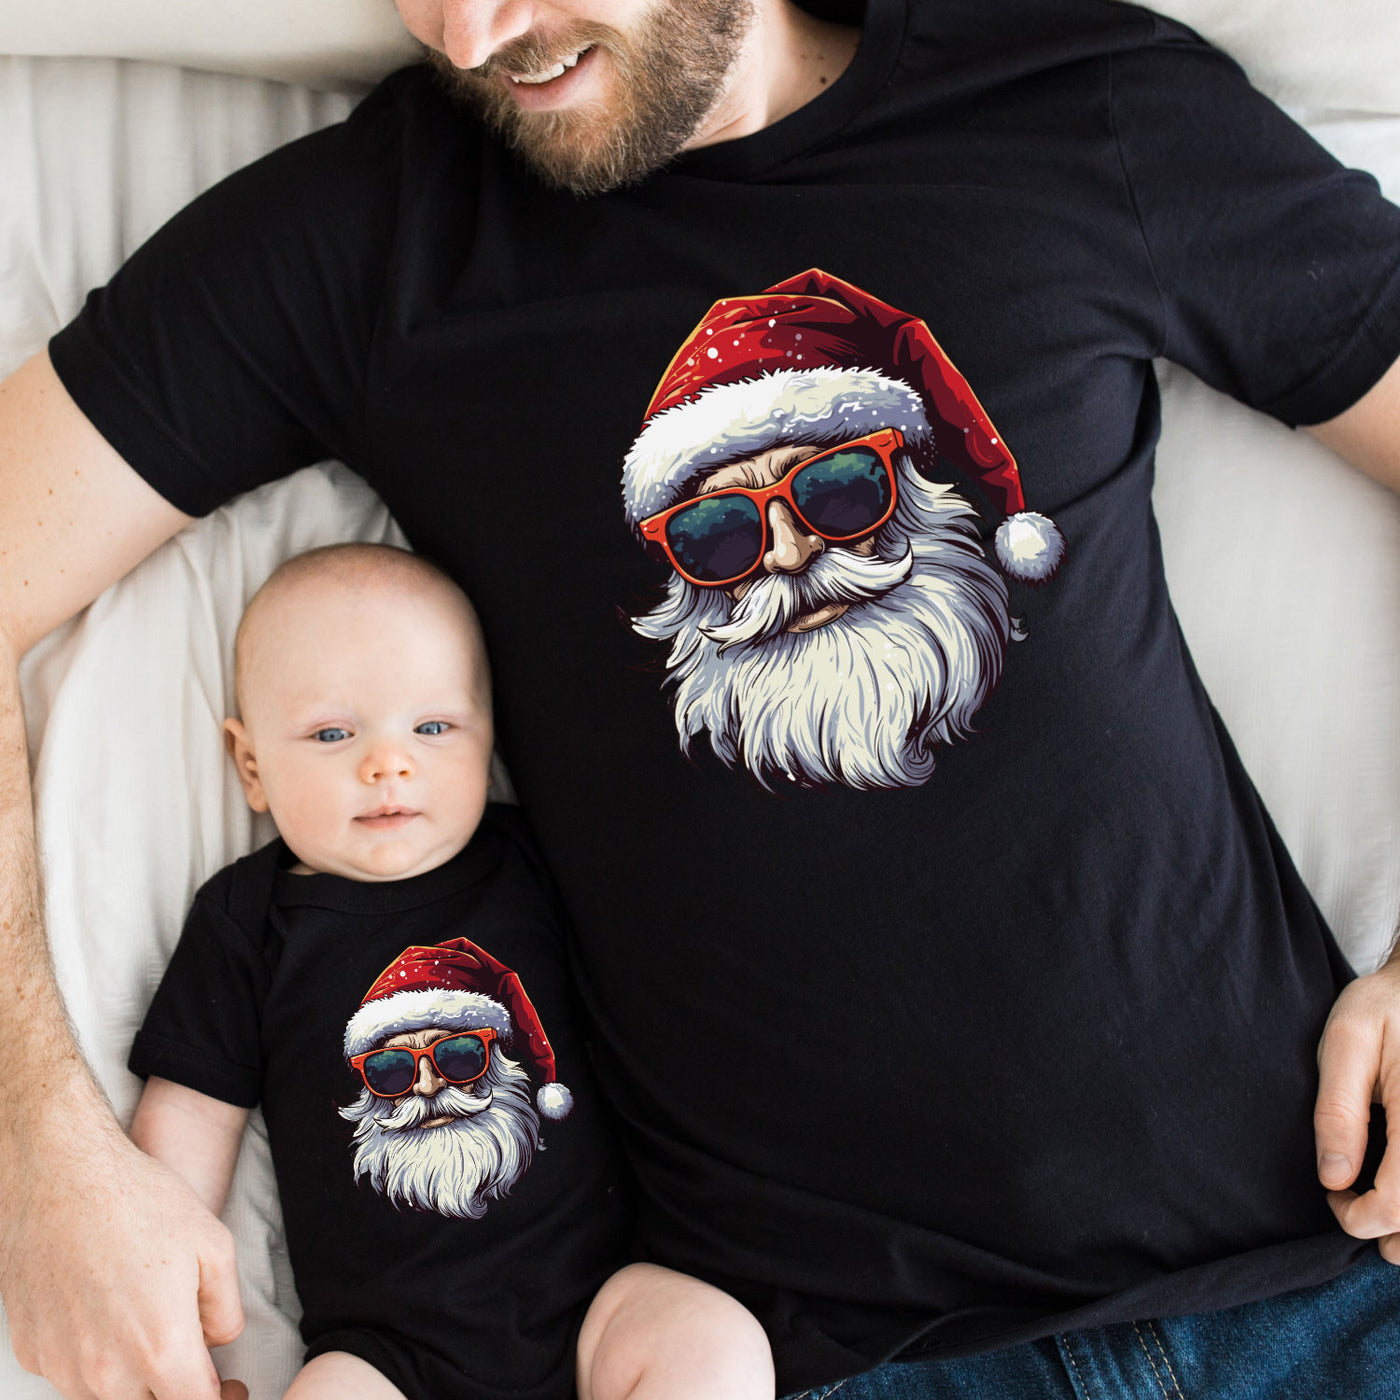 Familienshirts Weihnachten Geschenk Partnerlook Shirts Vater Sohn Outfit Mutter Tochter Unser erstes Weihnachten Cool Santa mit Sonnenbrille